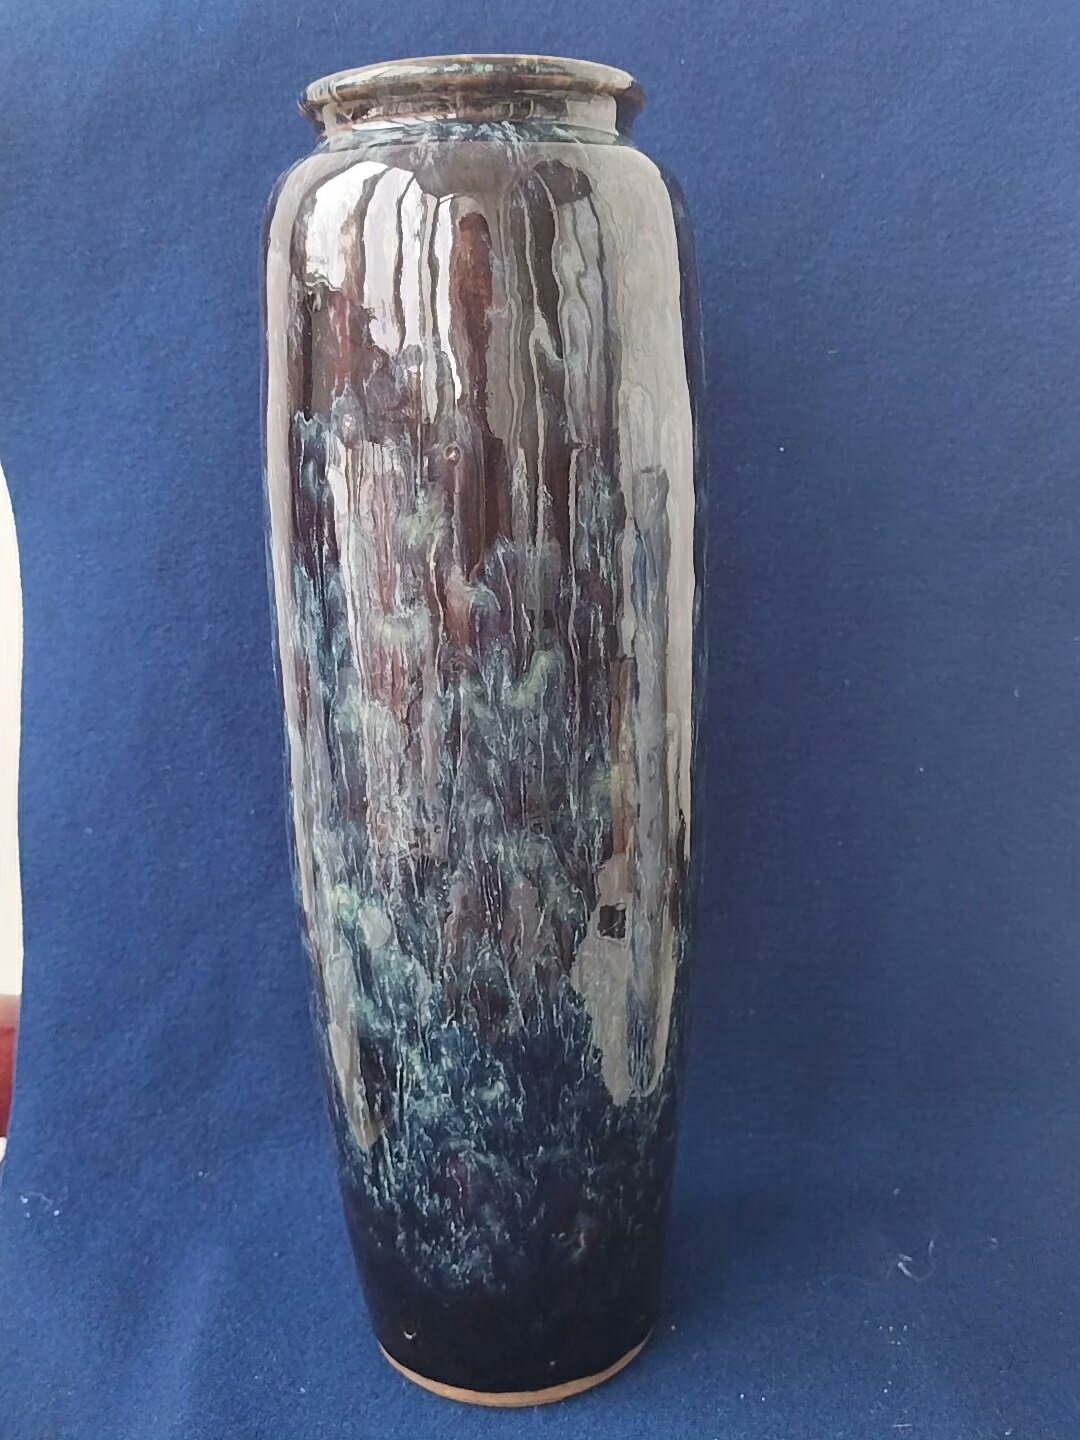 回流窯變釉花瓶。全品無瑕疵。尺寸高37厘米，腹徑13厘米。無